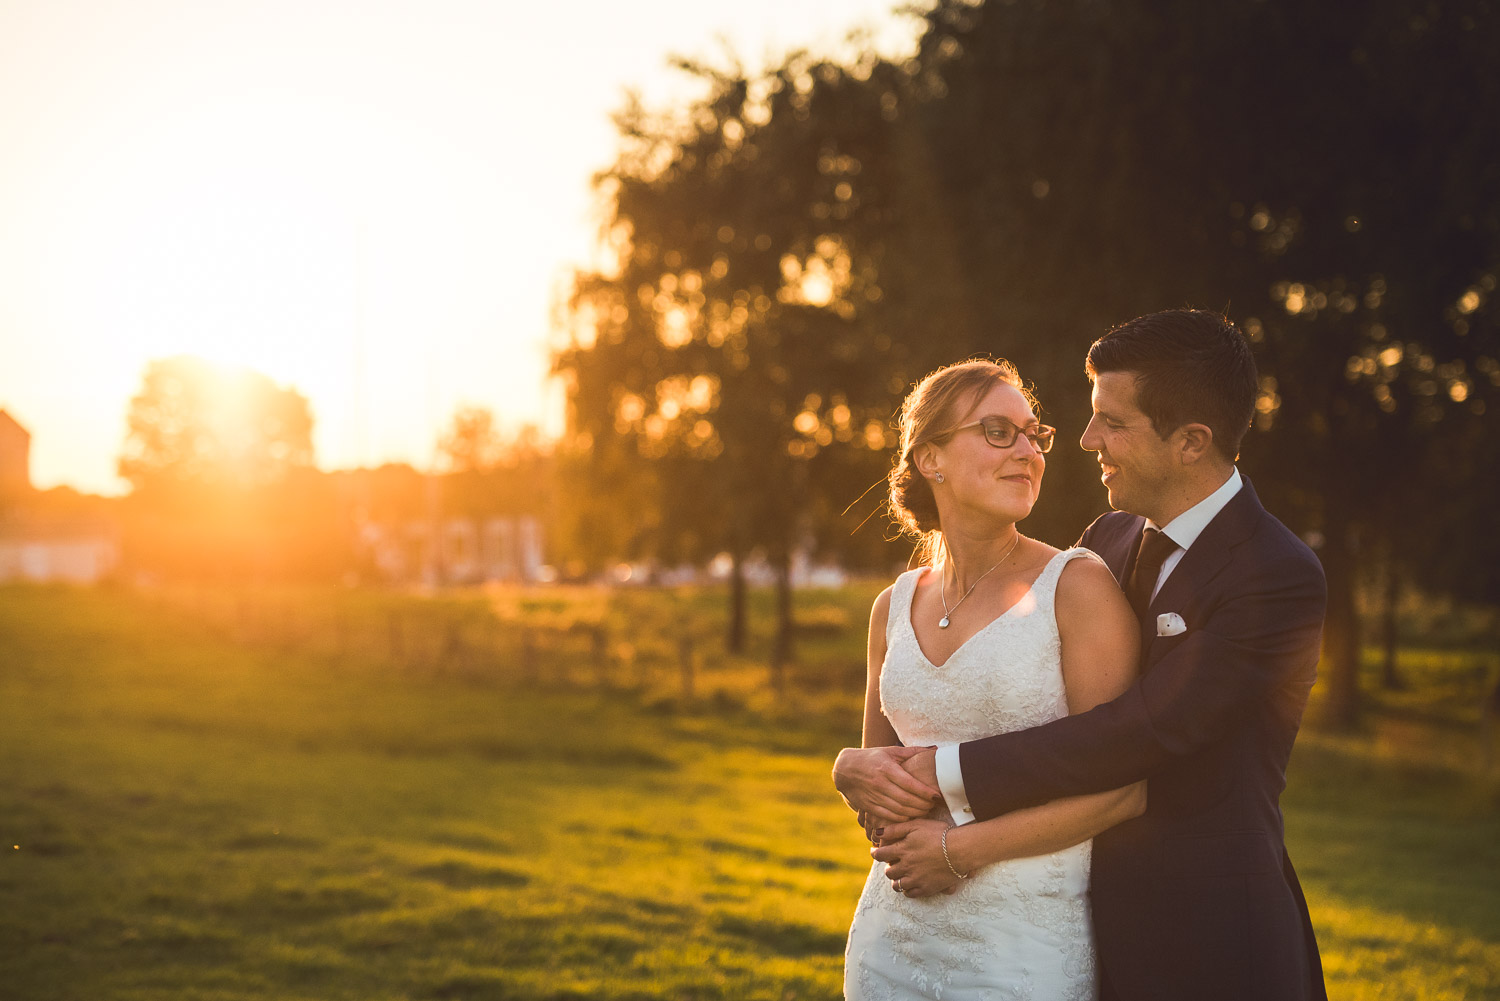 romantisch moment voor het bruidspaar, bij zonsondergang, bruidsfotografie door Cfoto uit West Brabant